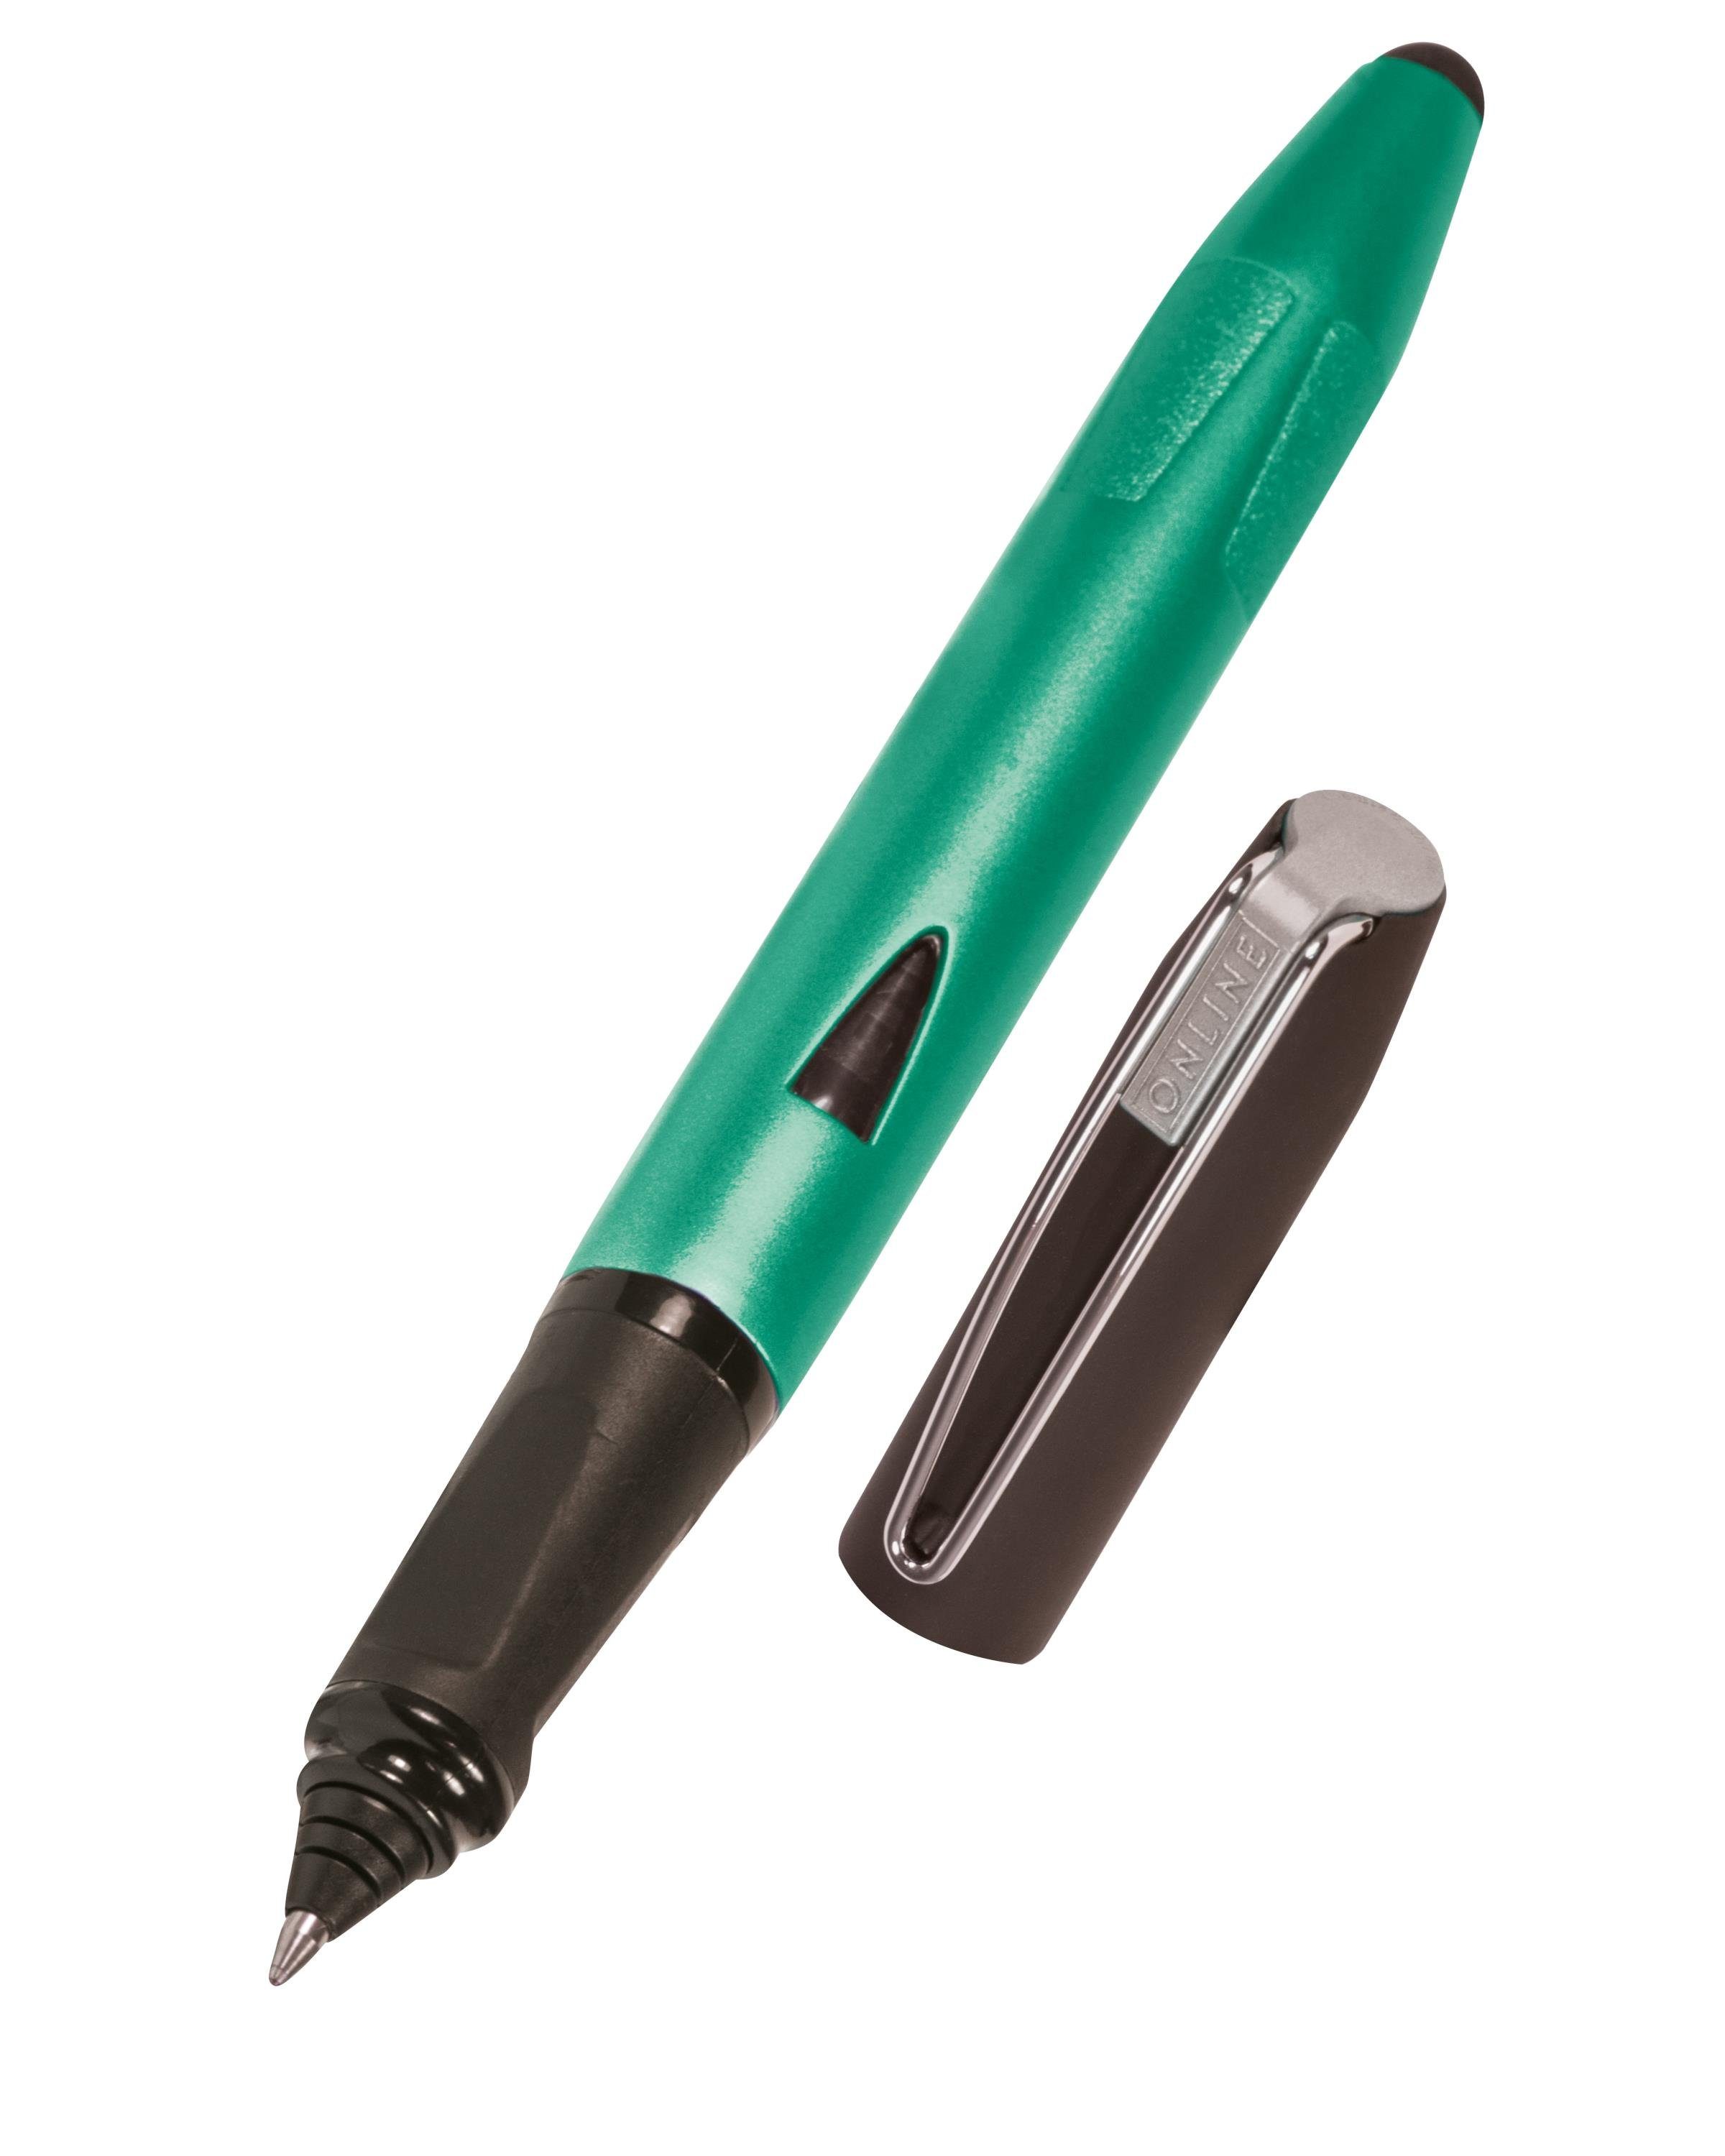 Online Pen Tintenroller Switch Plus, Grün ideal für Schule, ergonomisch, die Stylus-Tip mit